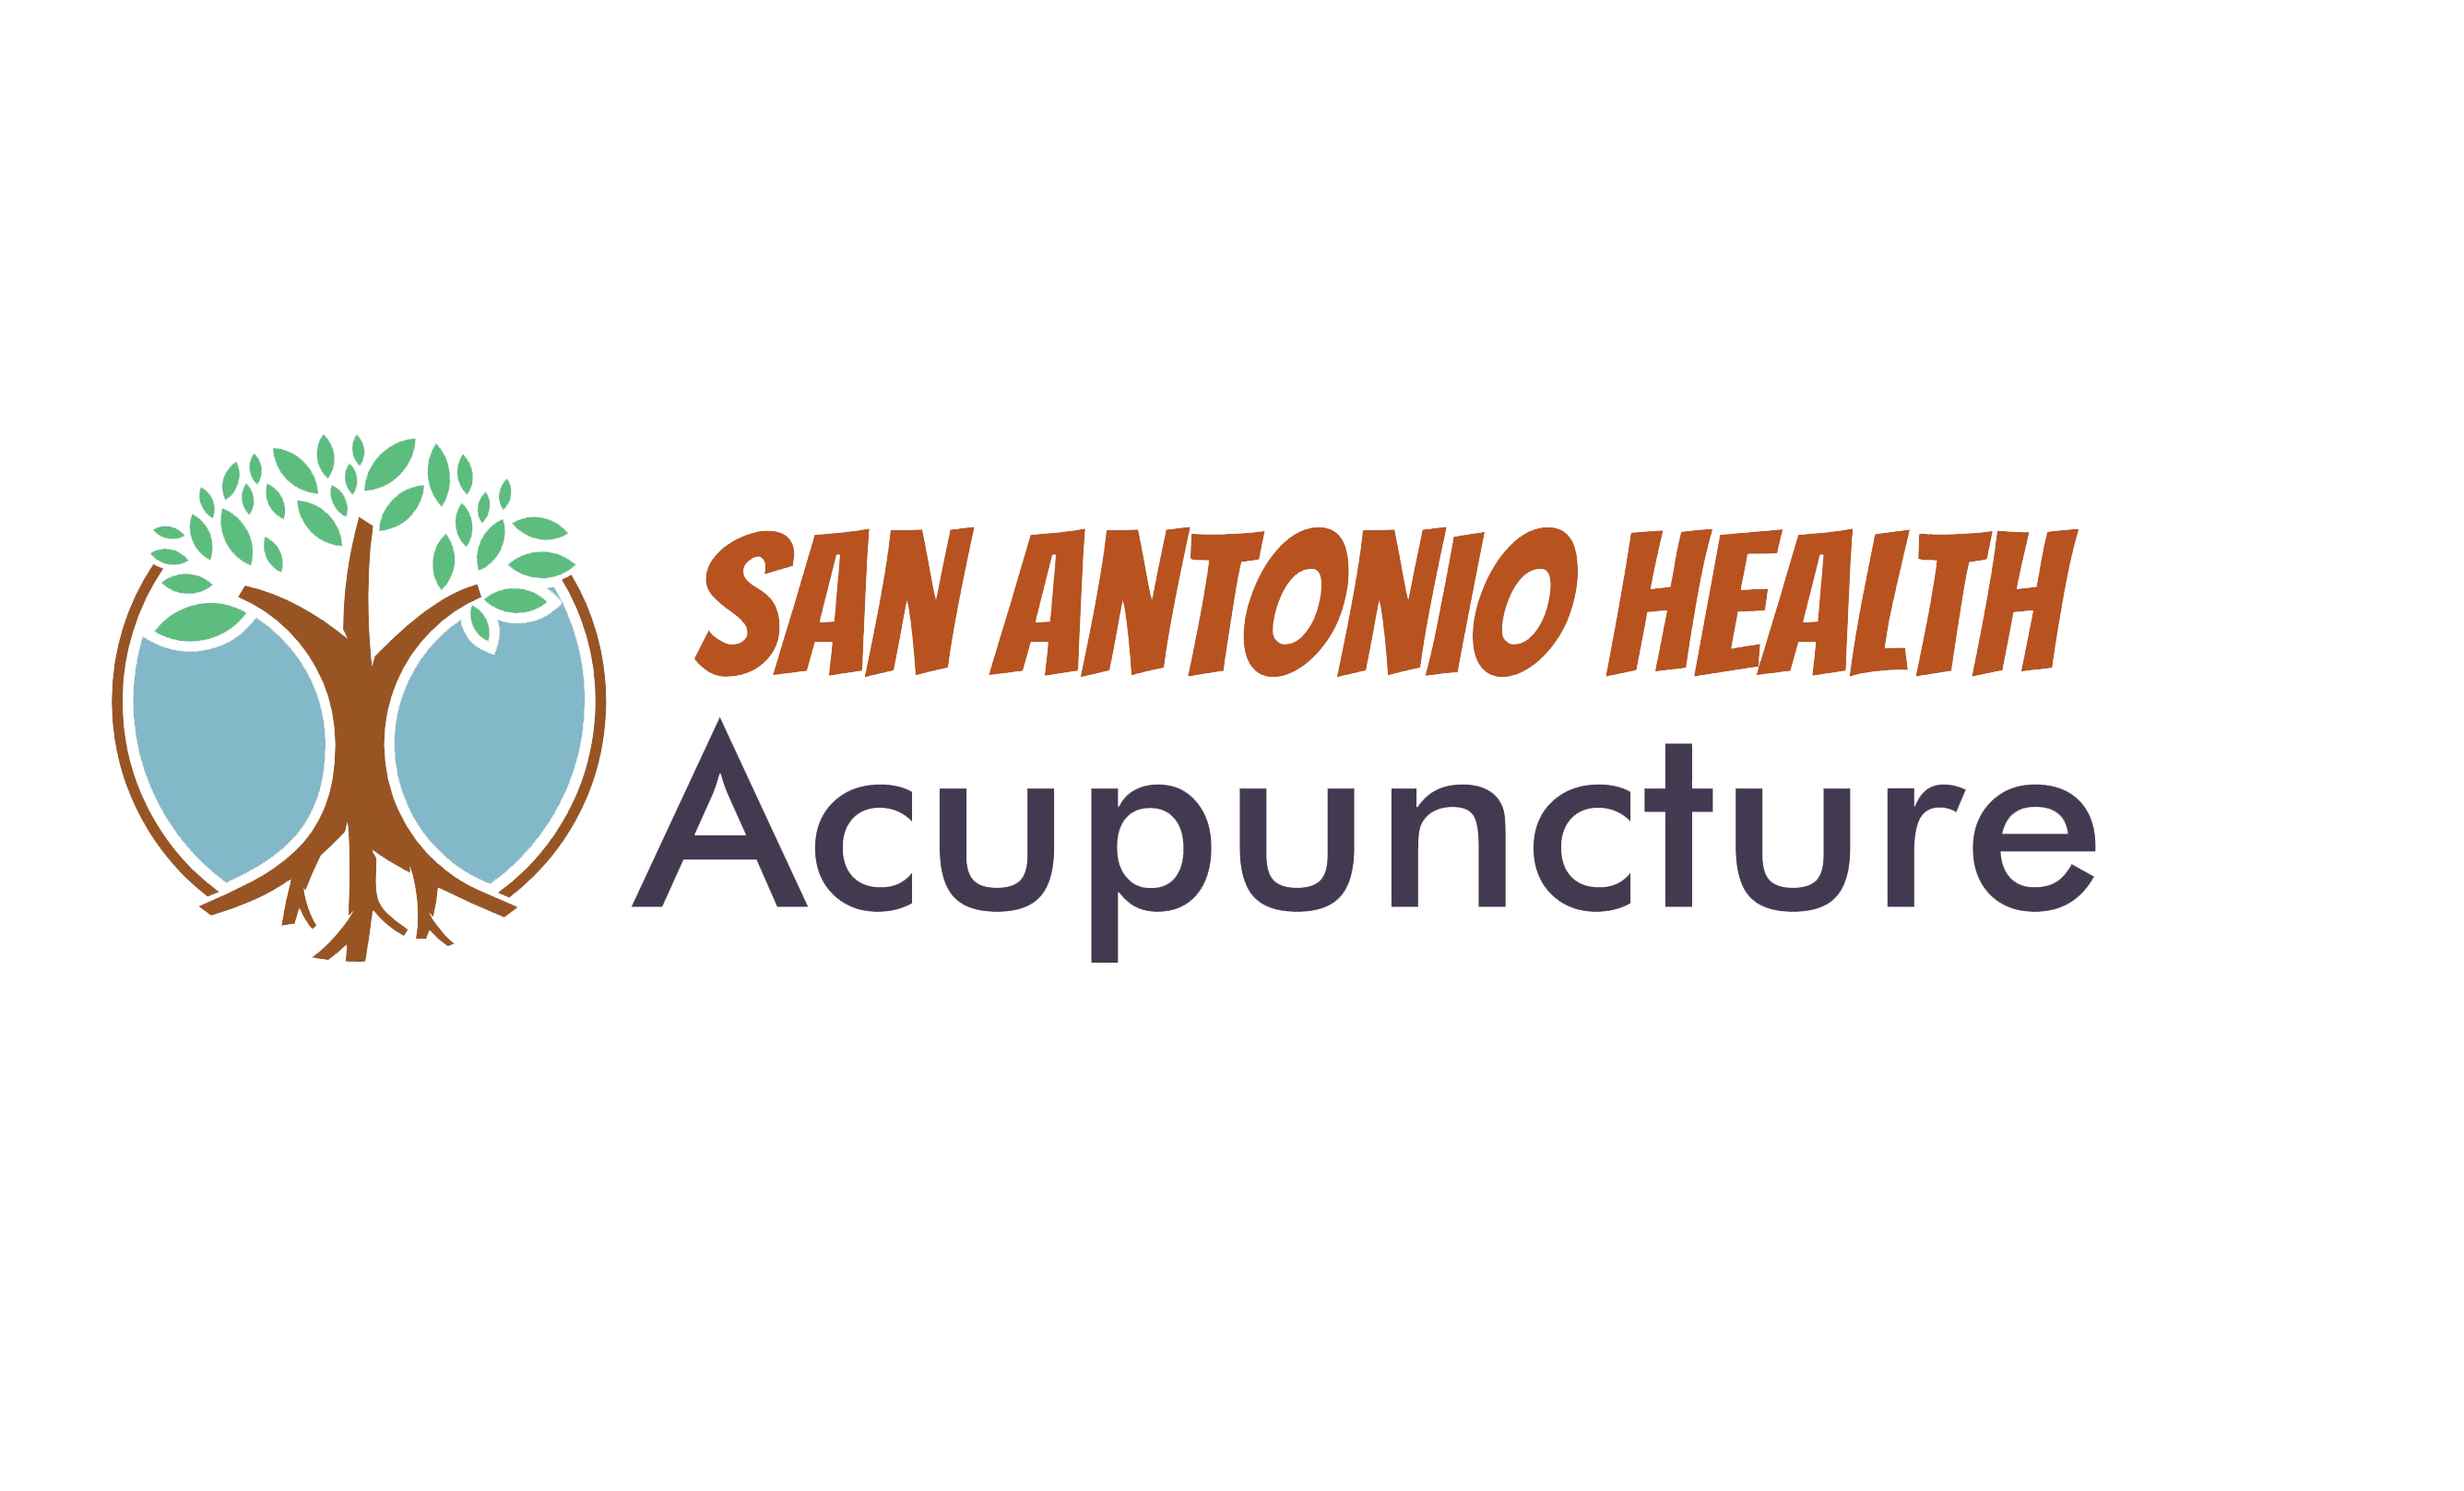 San Antonio Health Acupuncture